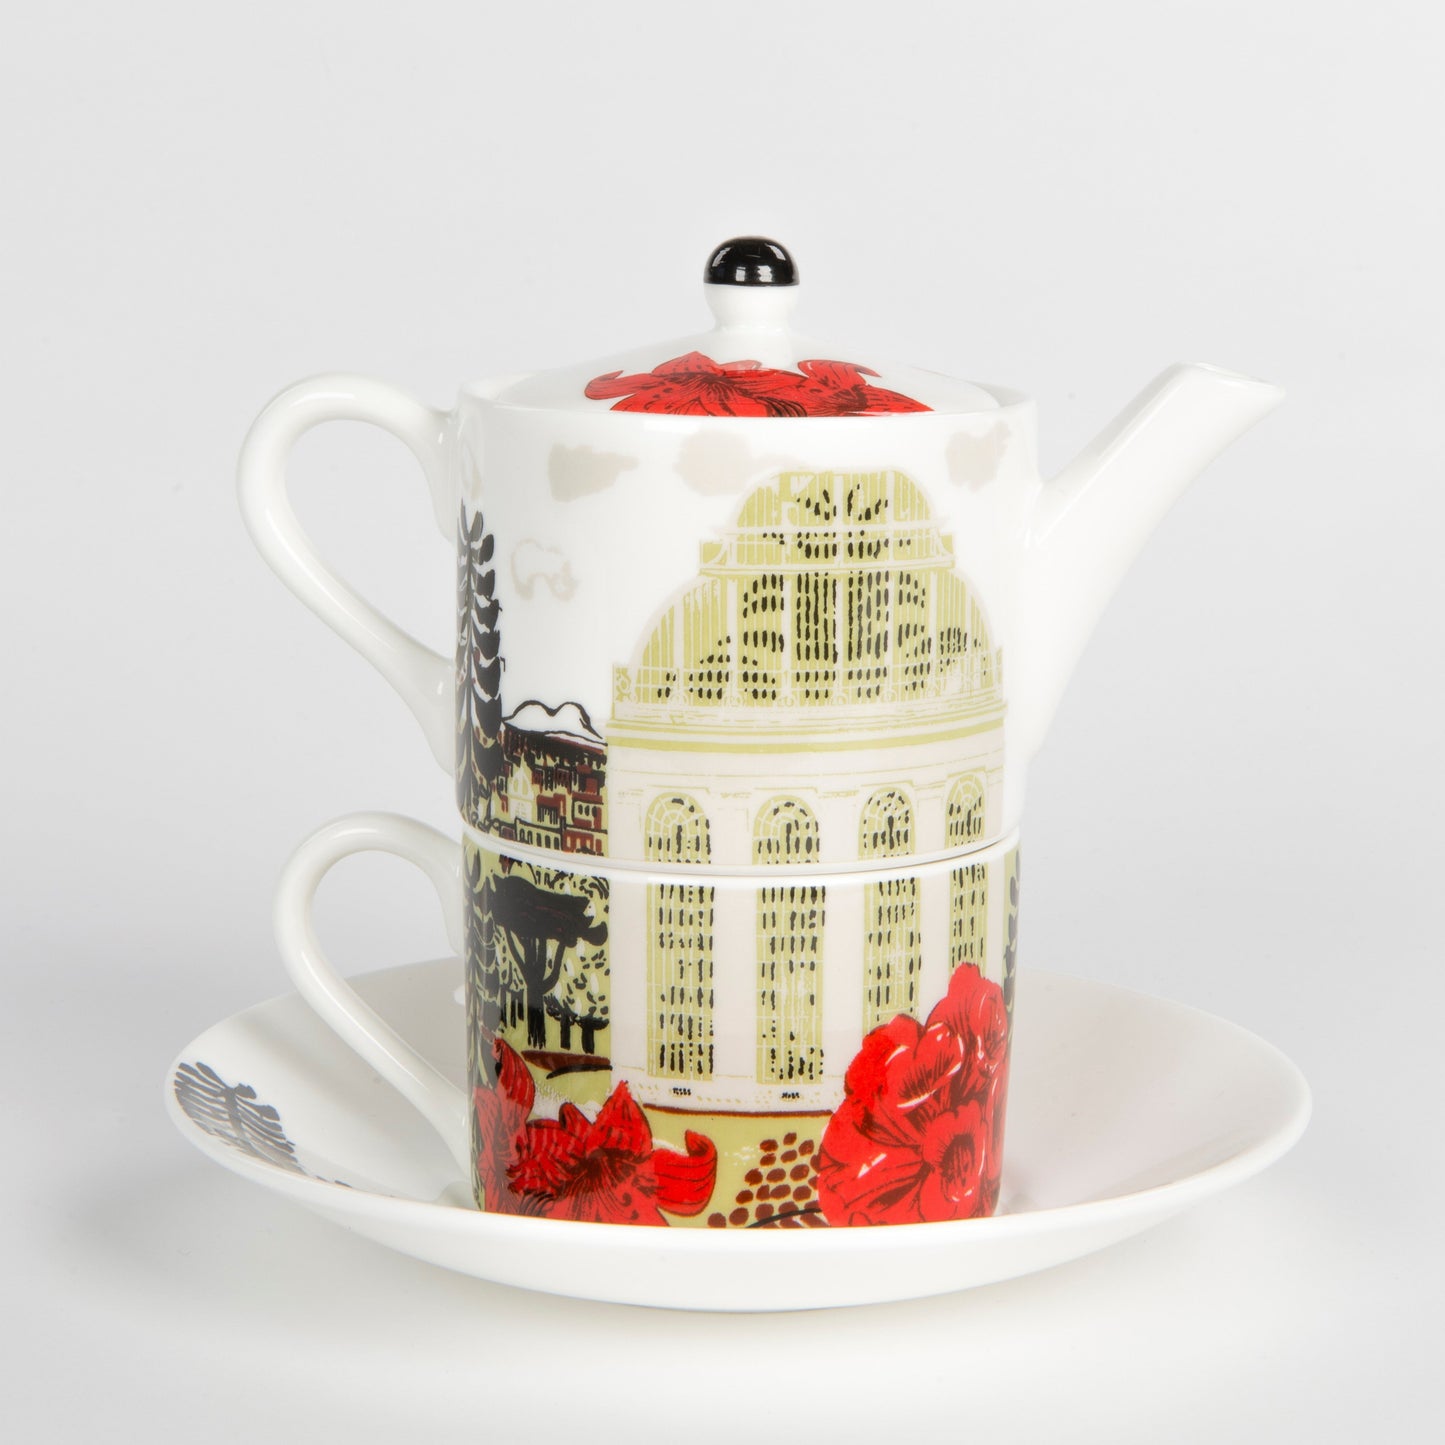 Tea-for-One Set - Palm House design